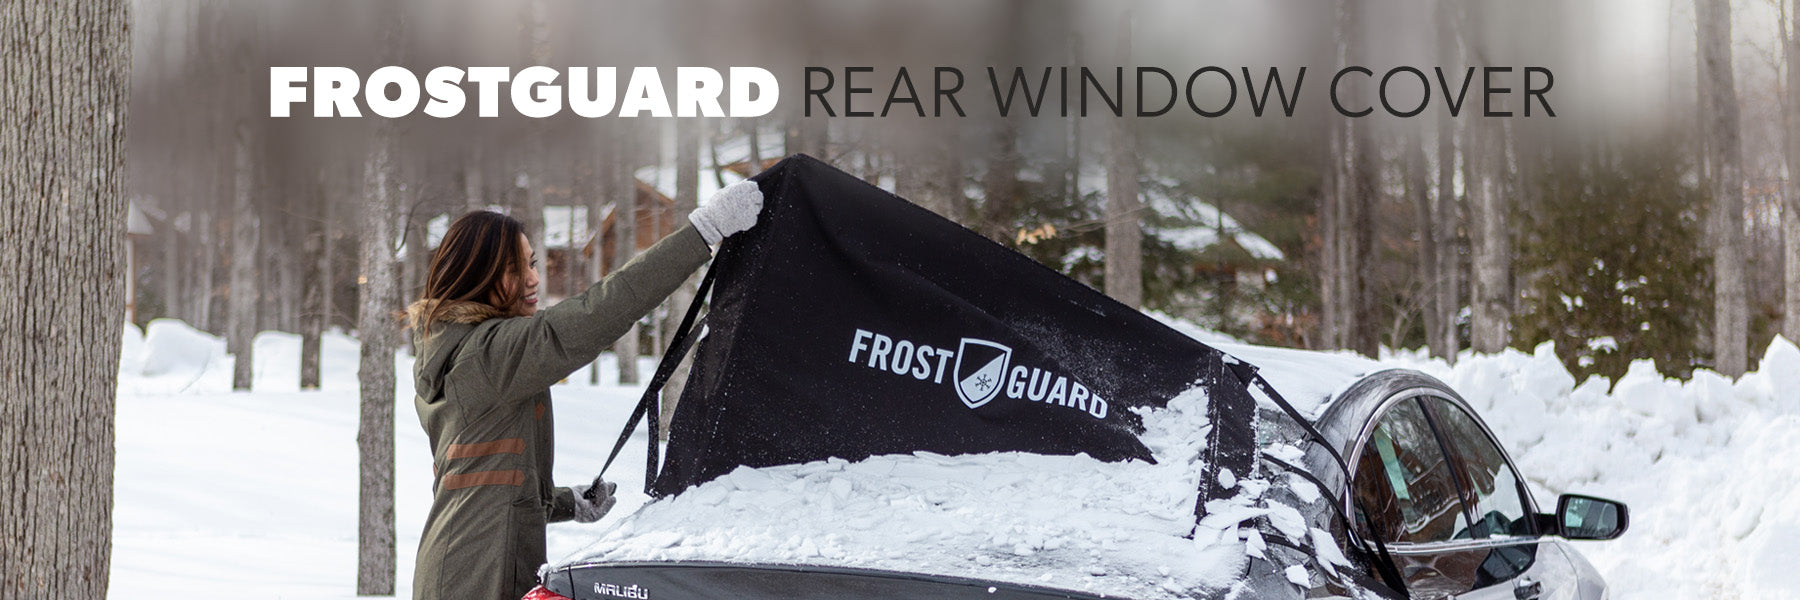 FrostGuard Rear Window Cover